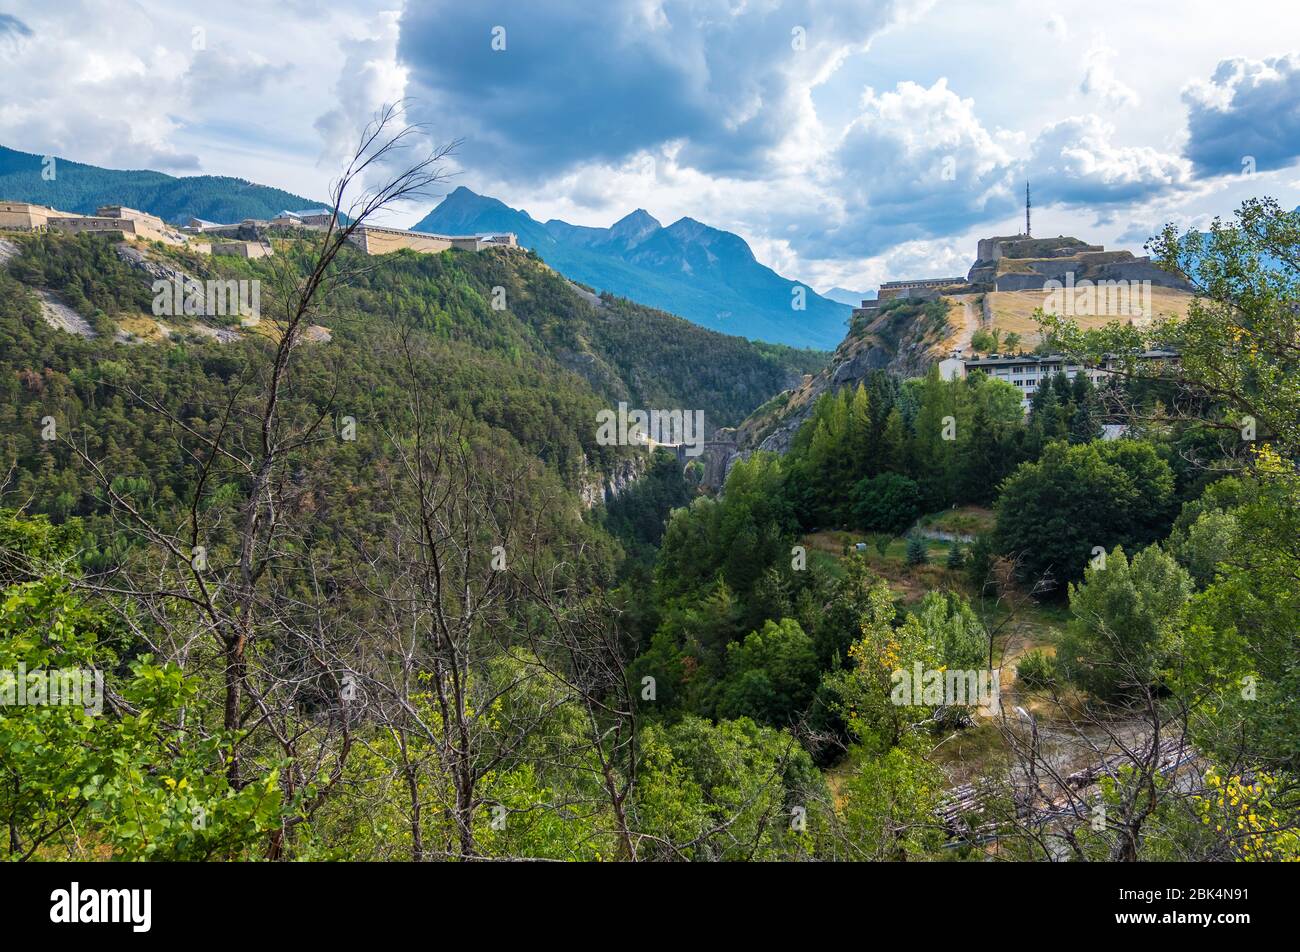 Exilles, Italie - 21 août 2019 : le fort Exilles est un complexe fortifié de la vallée de Susa, ville métropolitaine de Turin, Piémont, Italie du Nord Banque D'Images